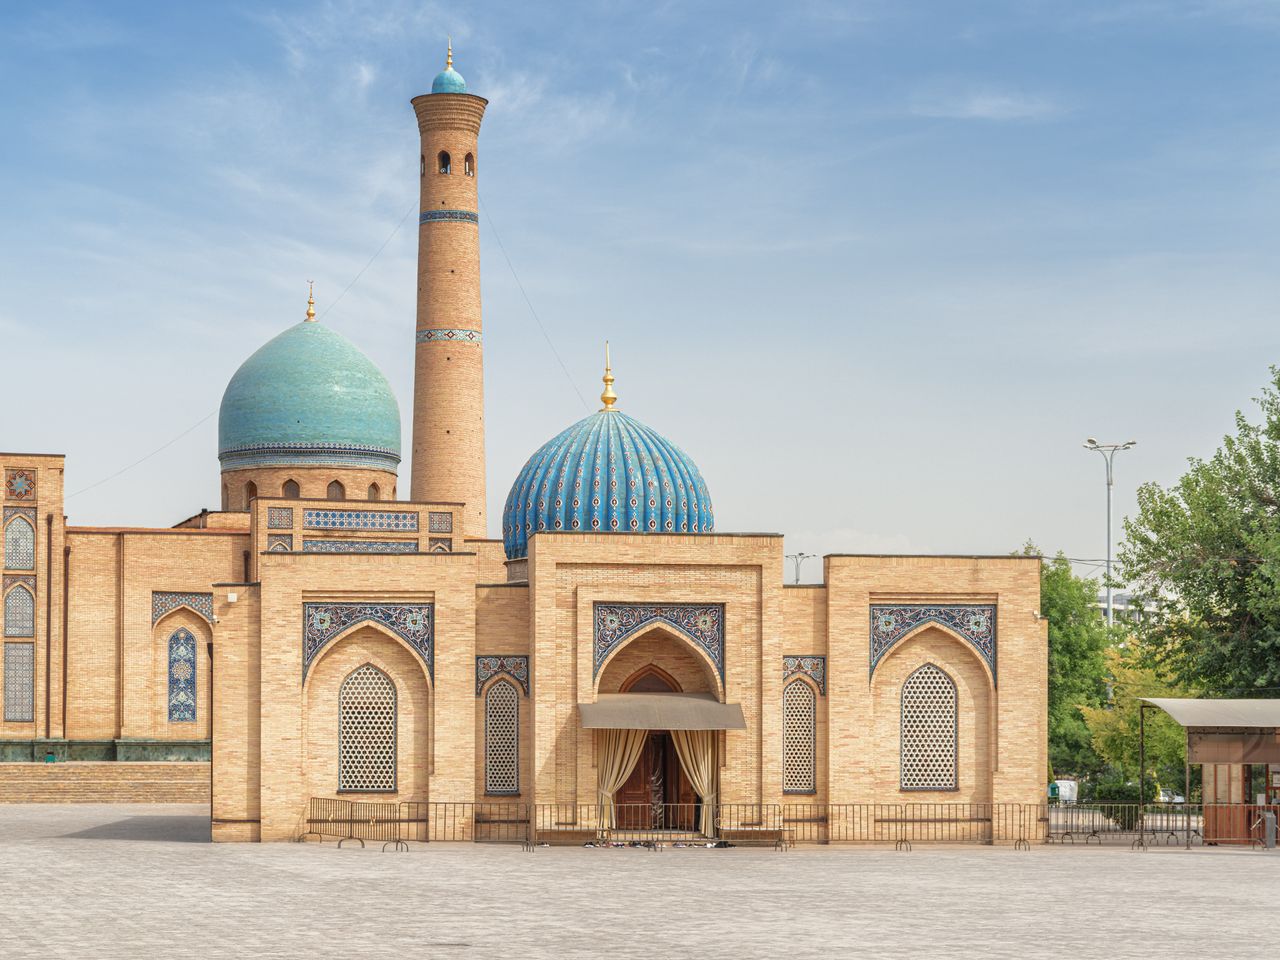 Мимолётом по Ташкенту  | Цена 100€, отзывы, описание экскурсии